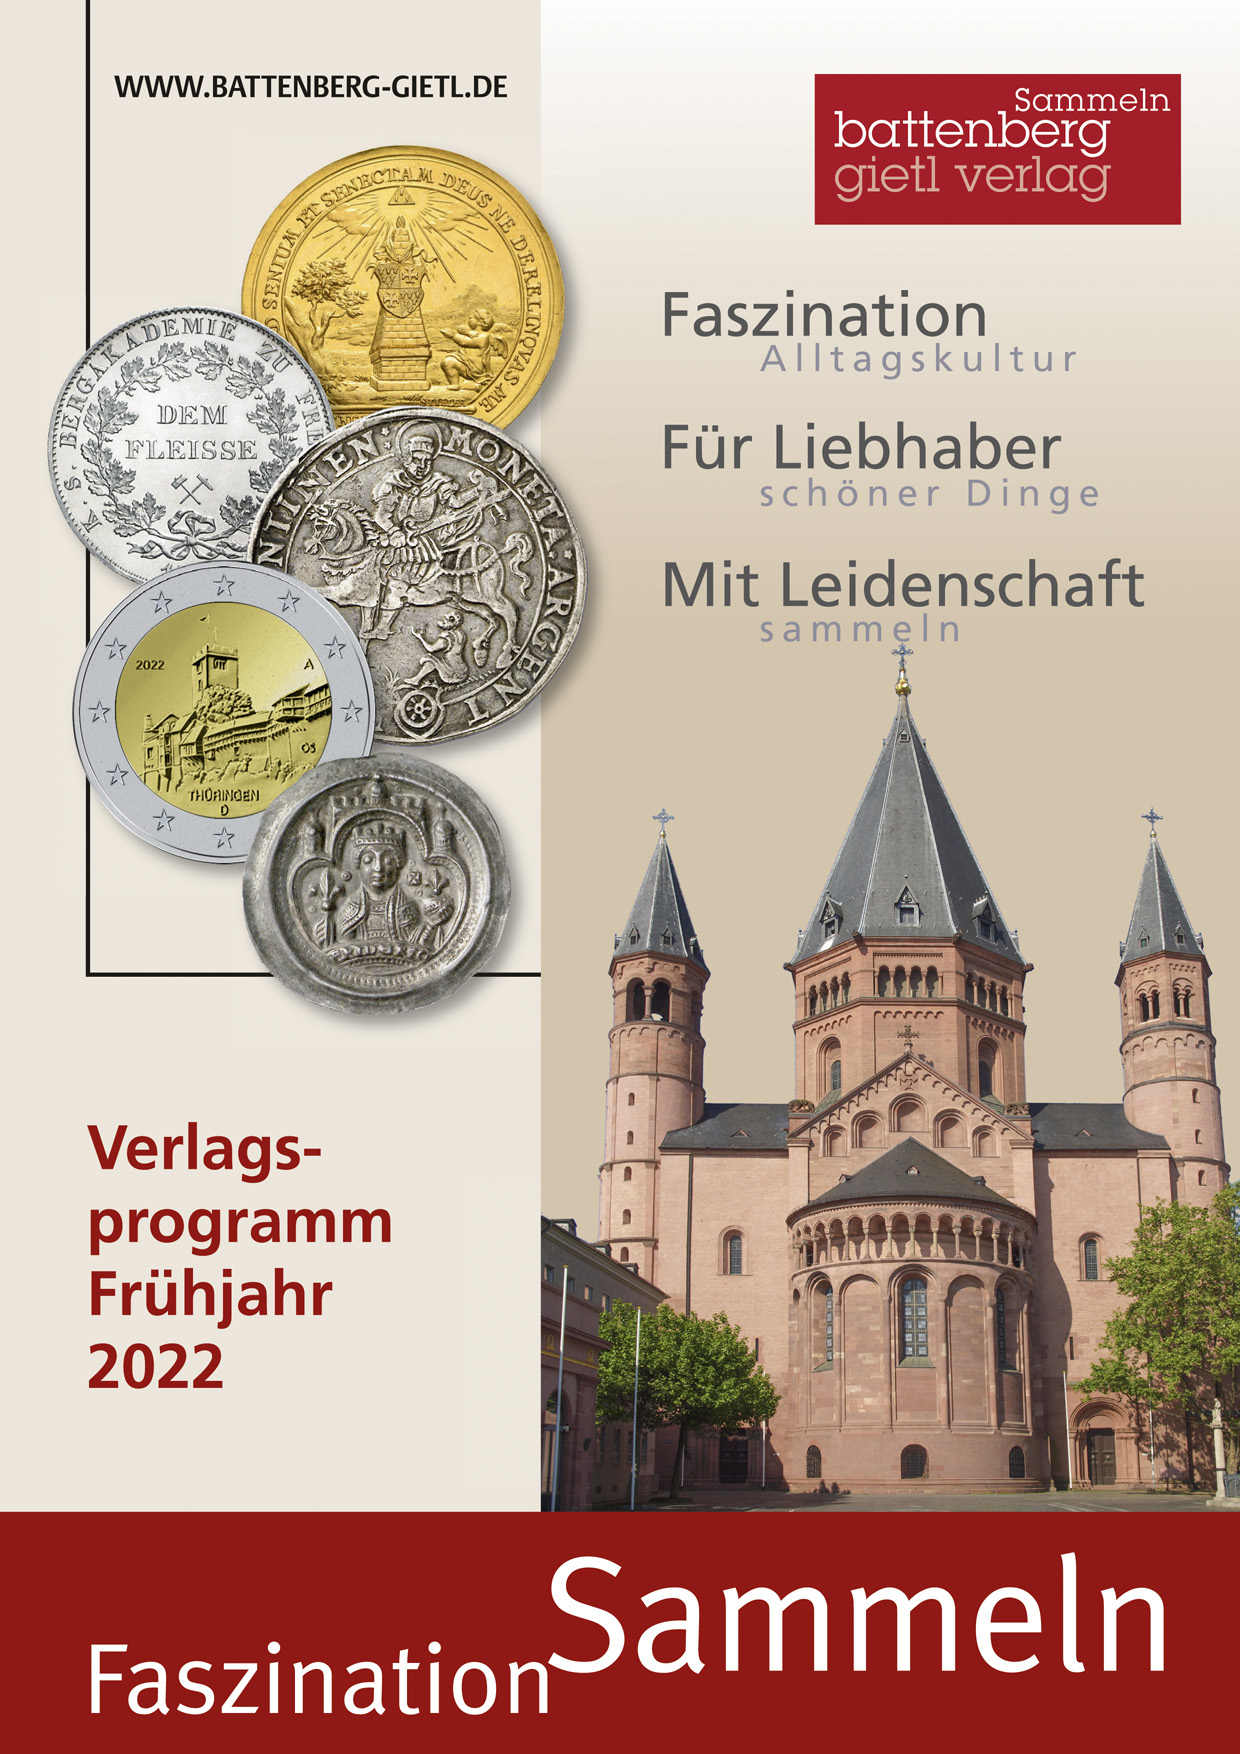 Unser Verlagsprogramm "Faszination Sammeln" - Cover